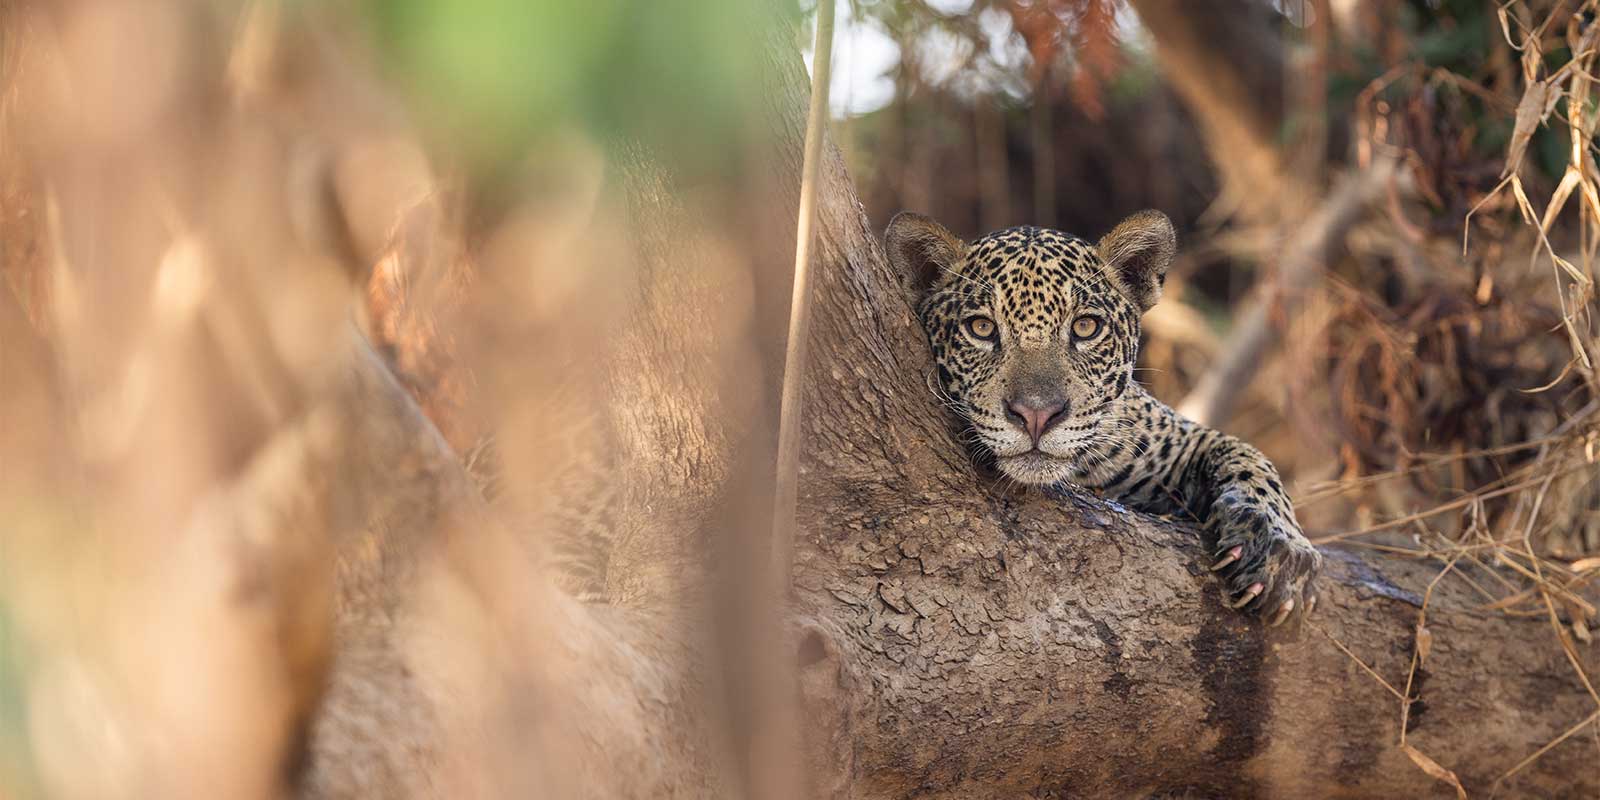 Jaguar cub in the Pantanal